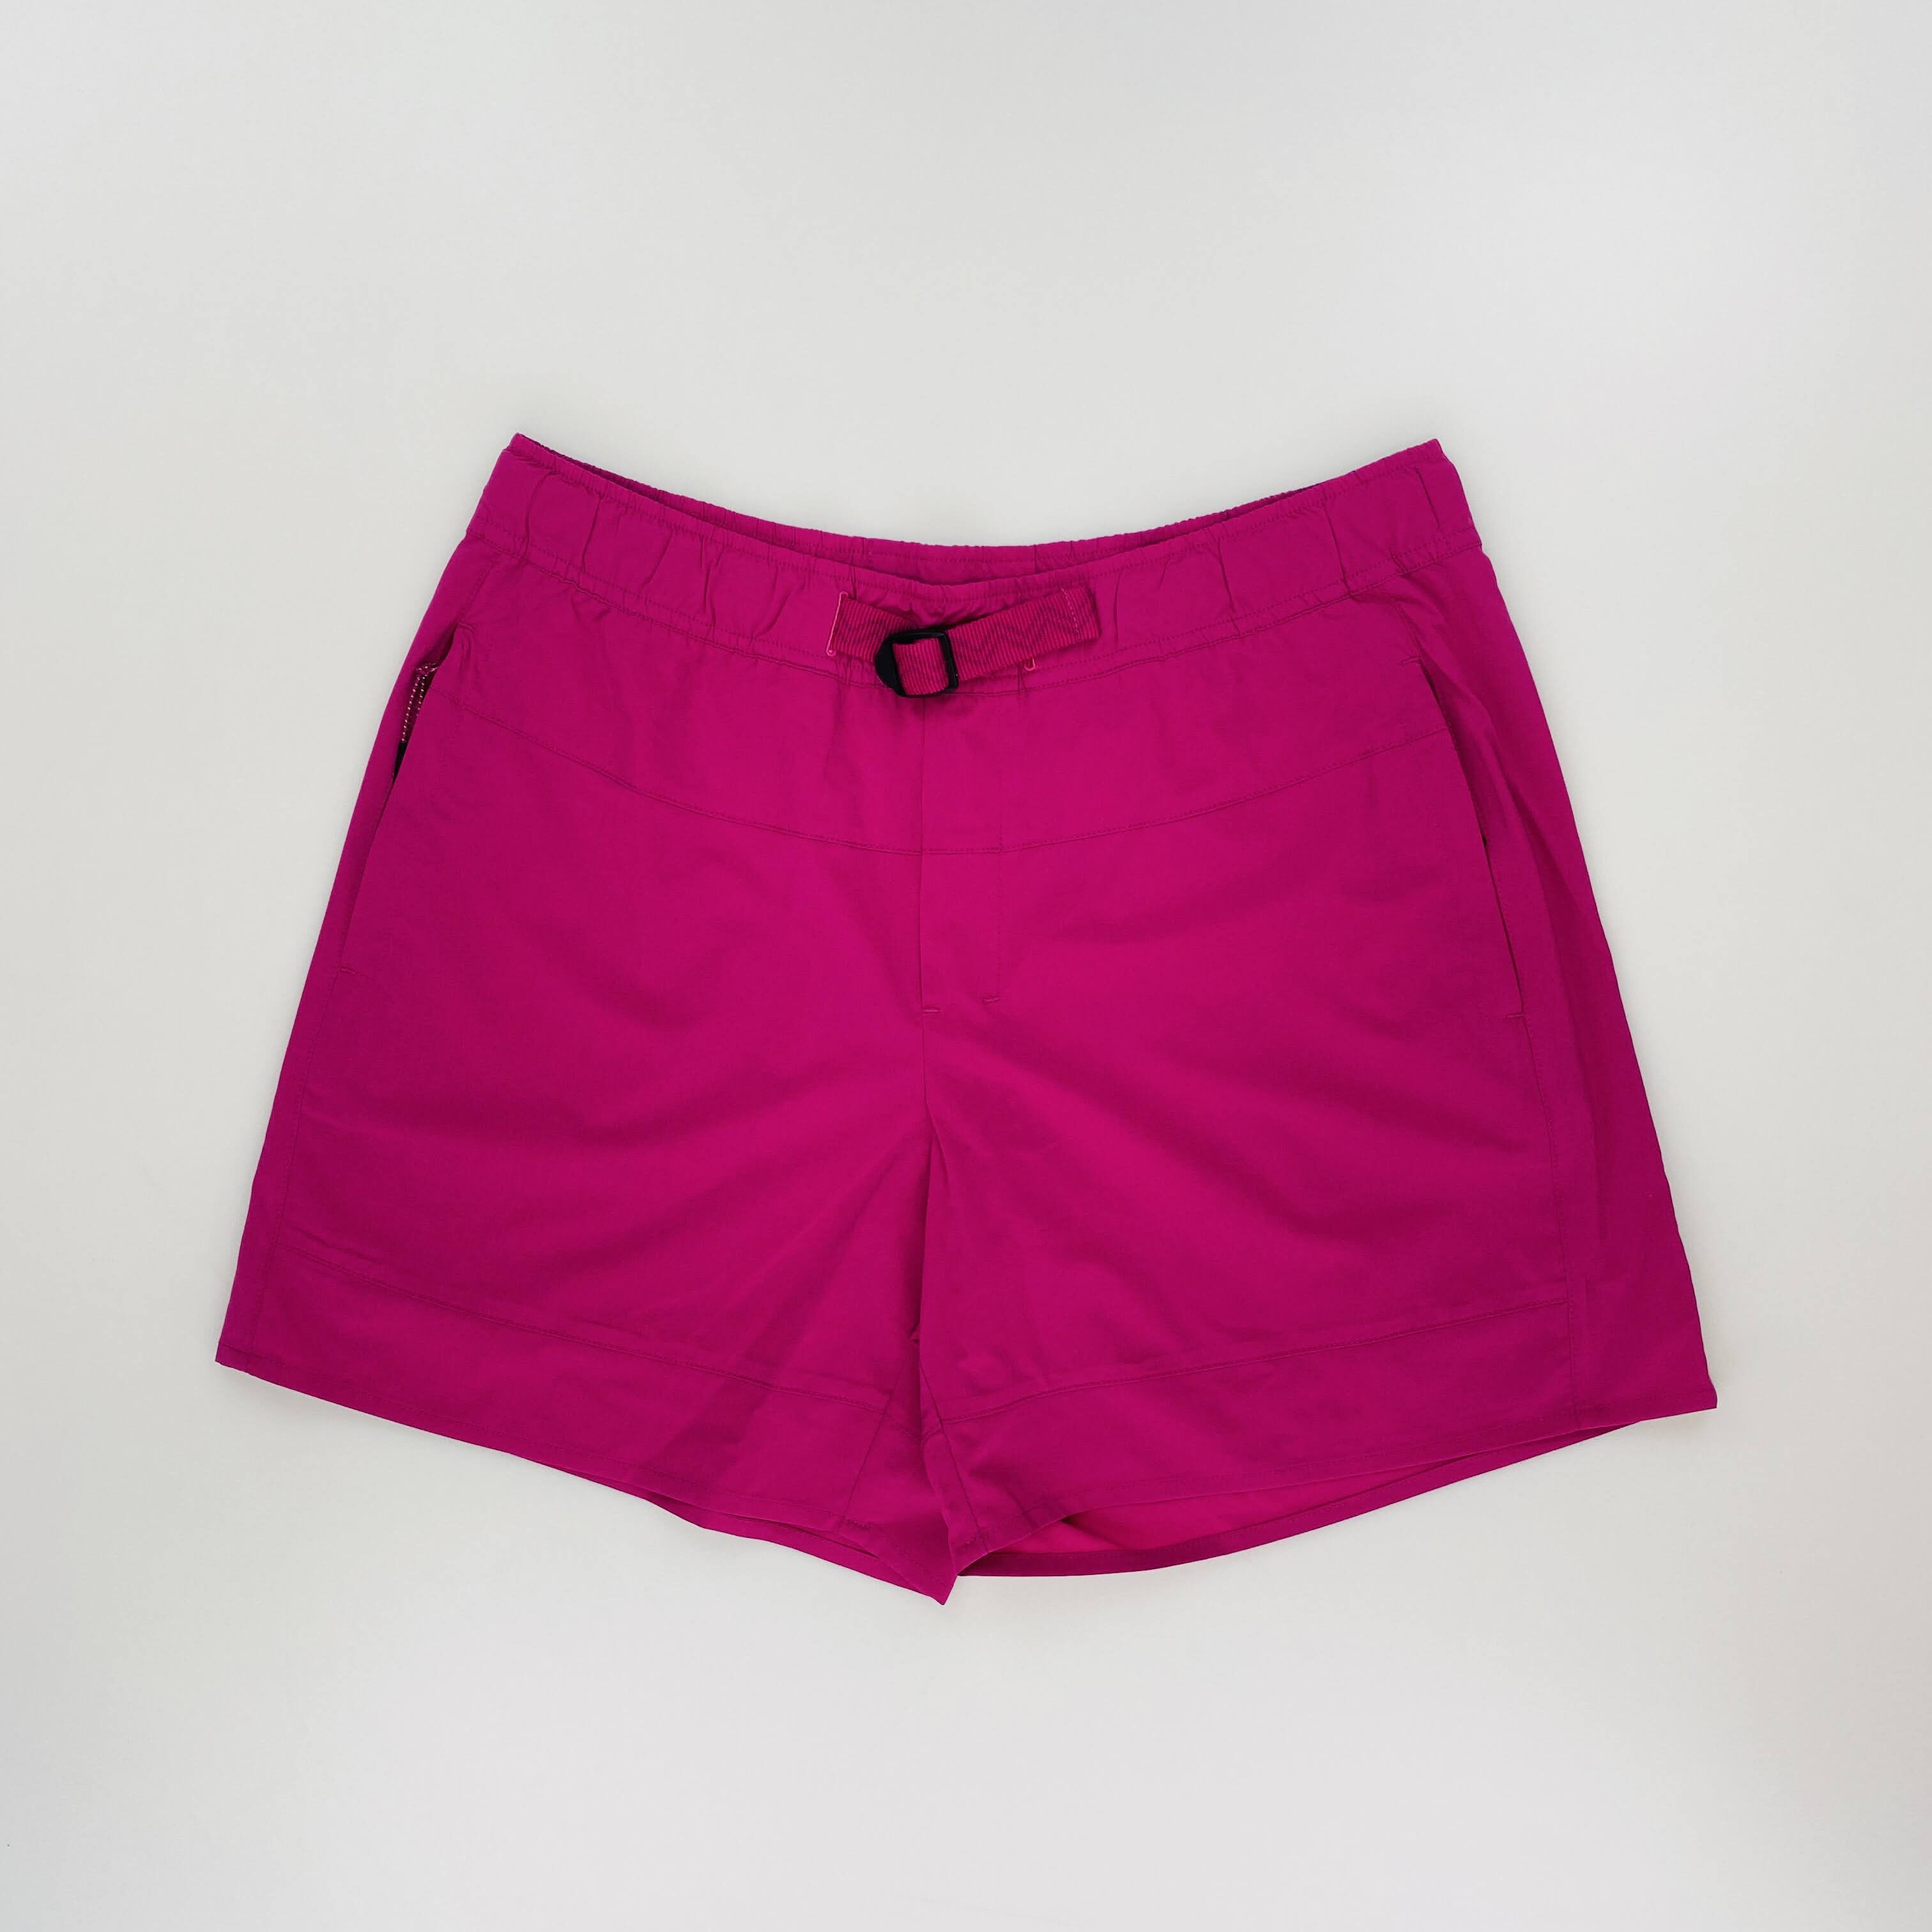 Kari Traa Ane Shorts - Segunda Mano Pantalones cortos - Mujer - Rosado - M | Hardloop